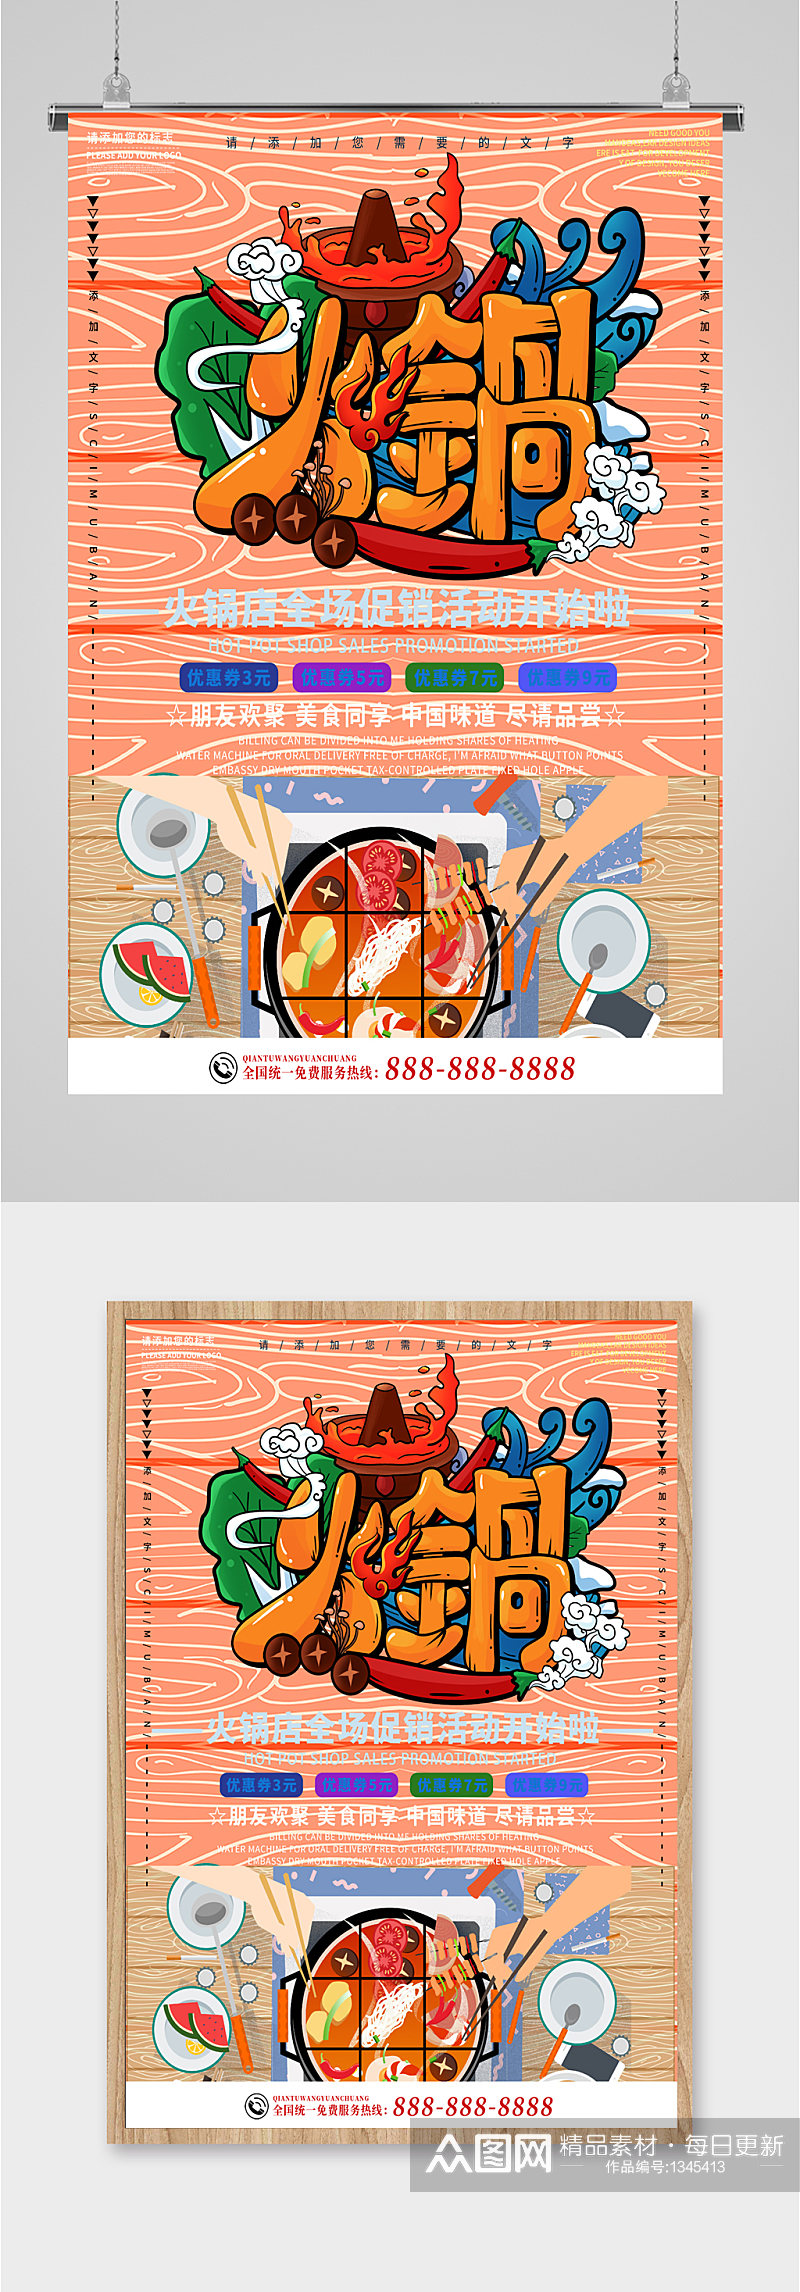 火锅美食宣传海报展板素材